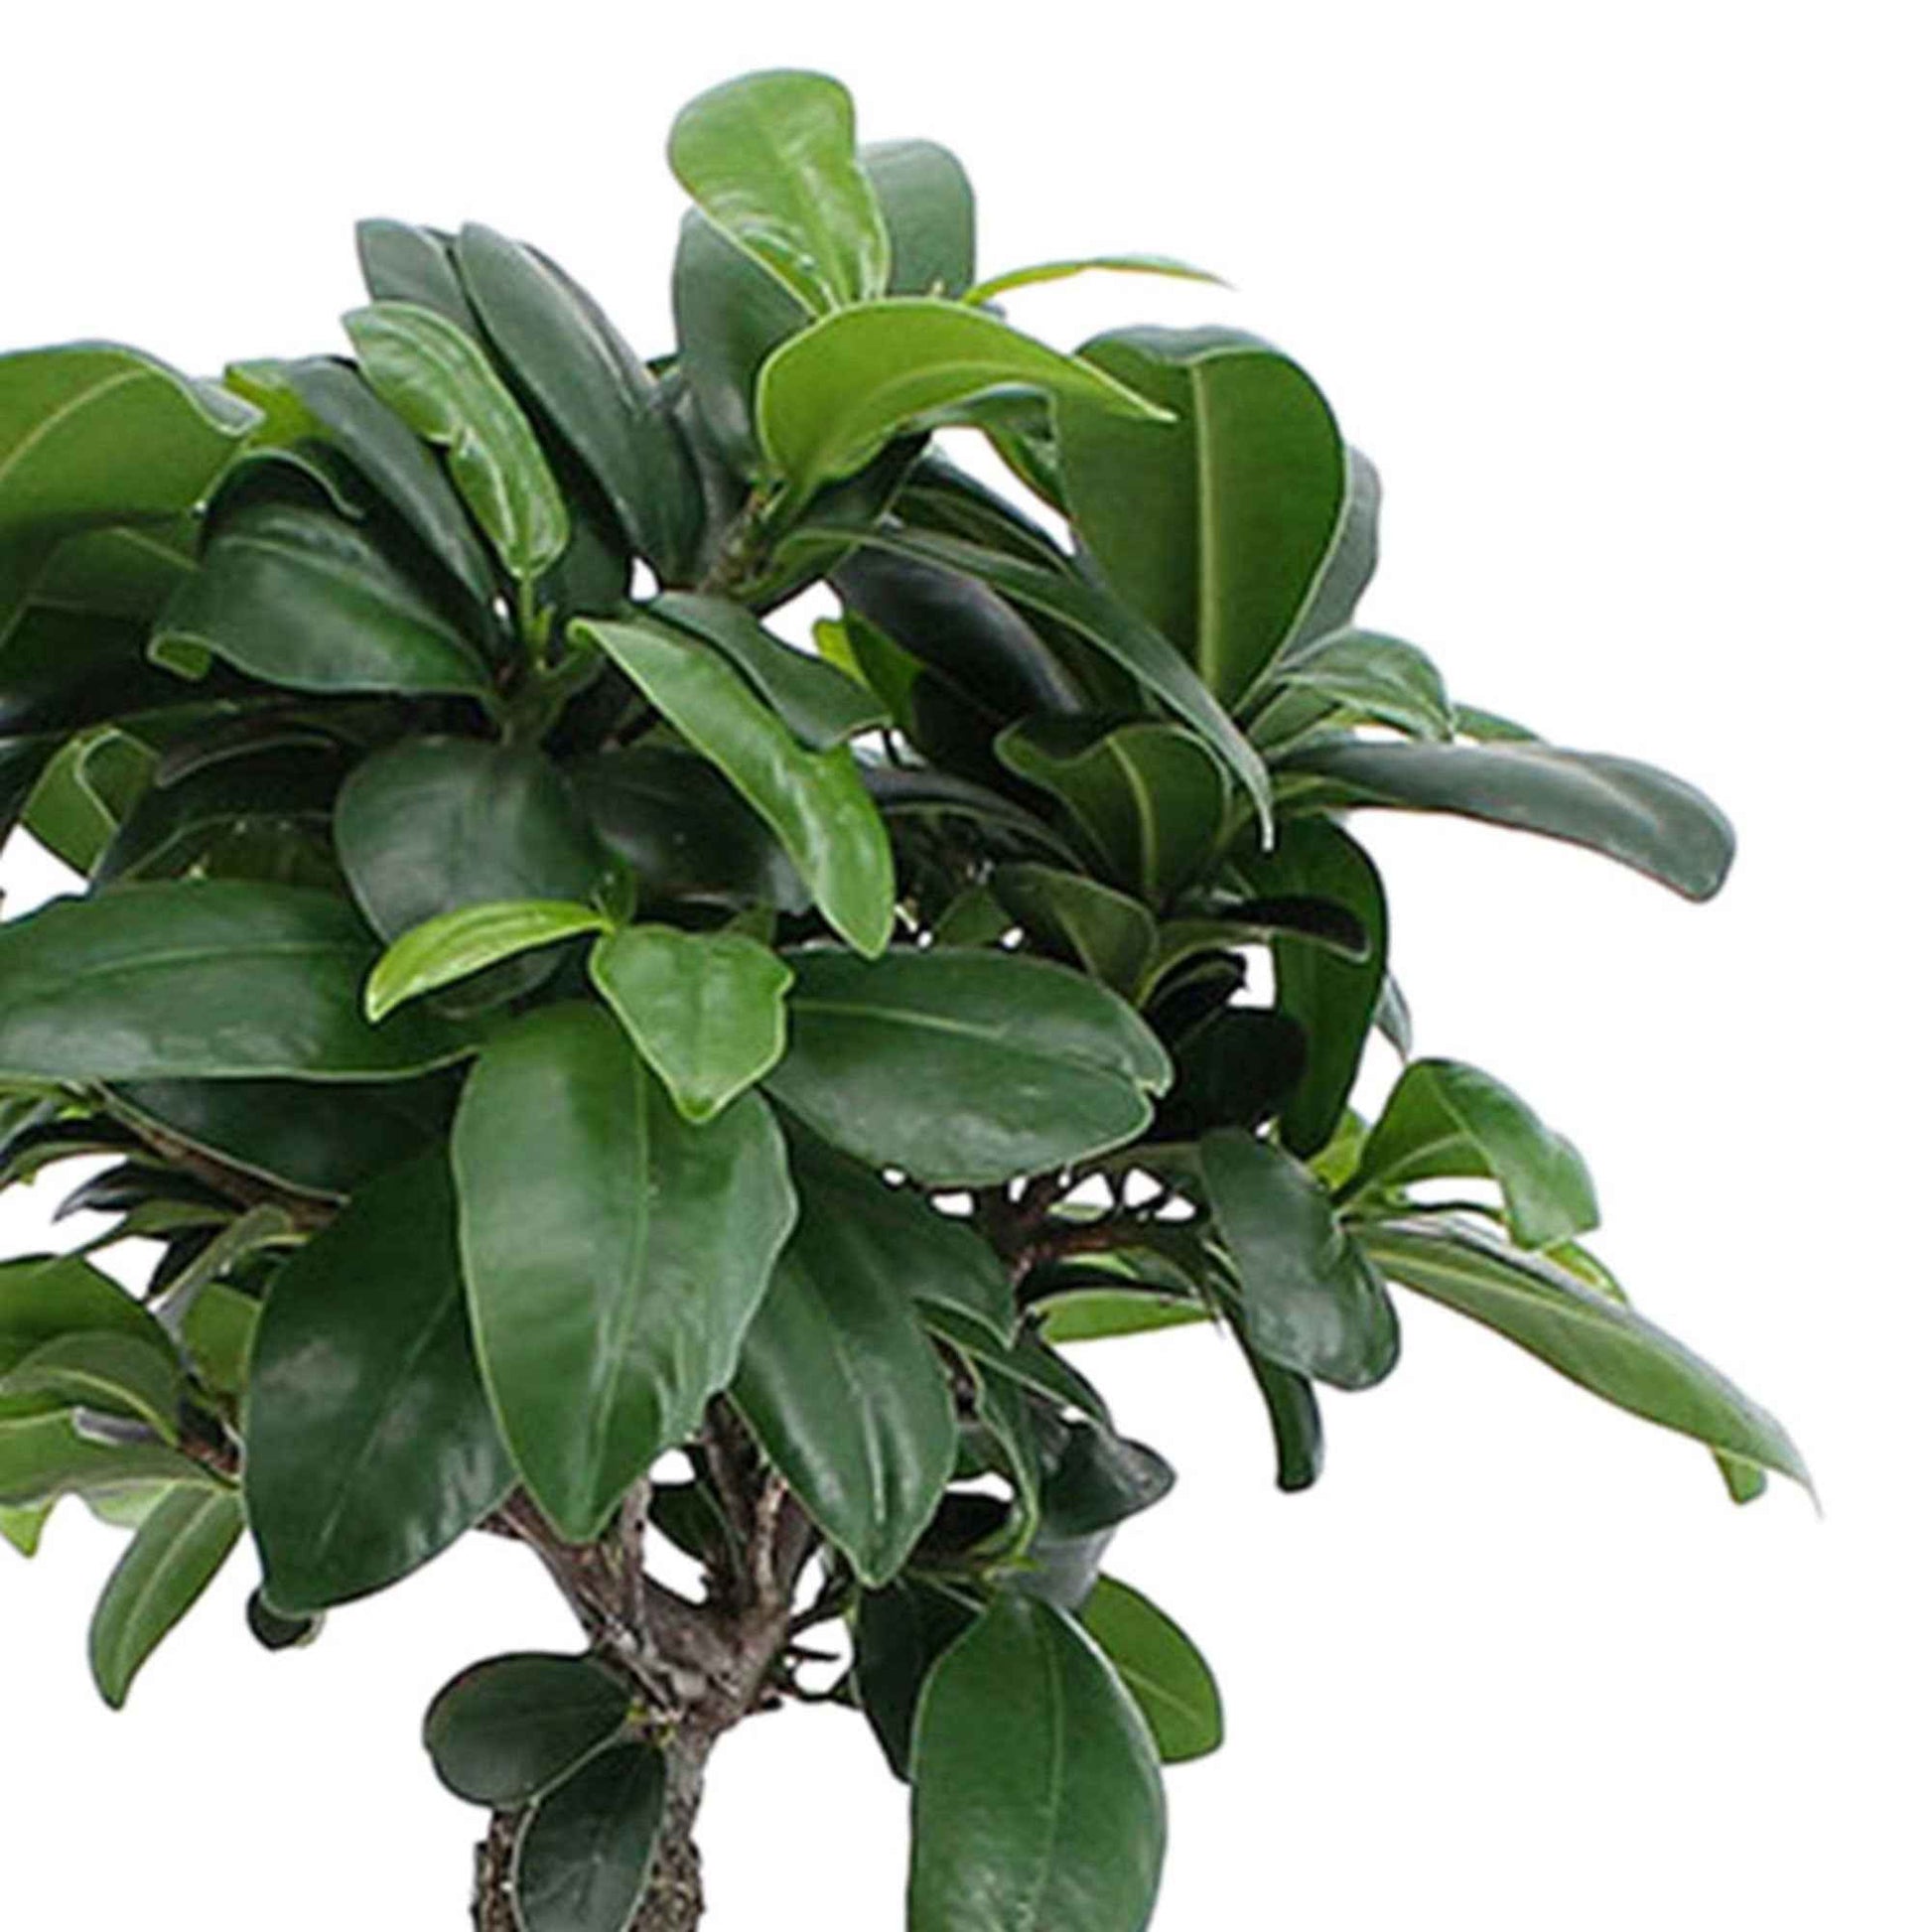 Bonsai Ficus 'Ginseng' - Ficus microcarpa ginseng - Nach Sorten